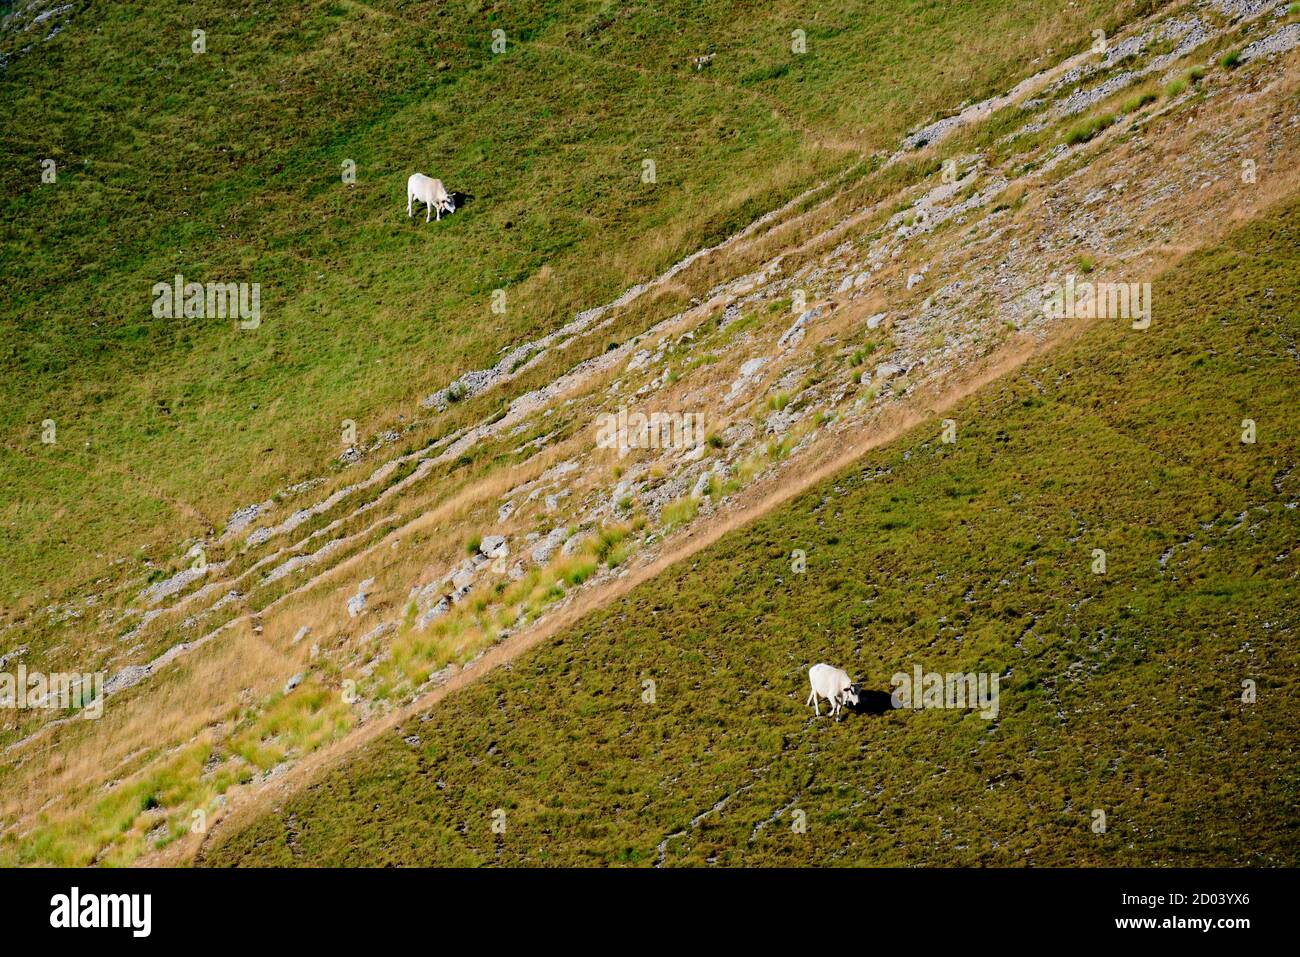 Vacas caminando en un prado separado por una línea de piedras Foto de stock